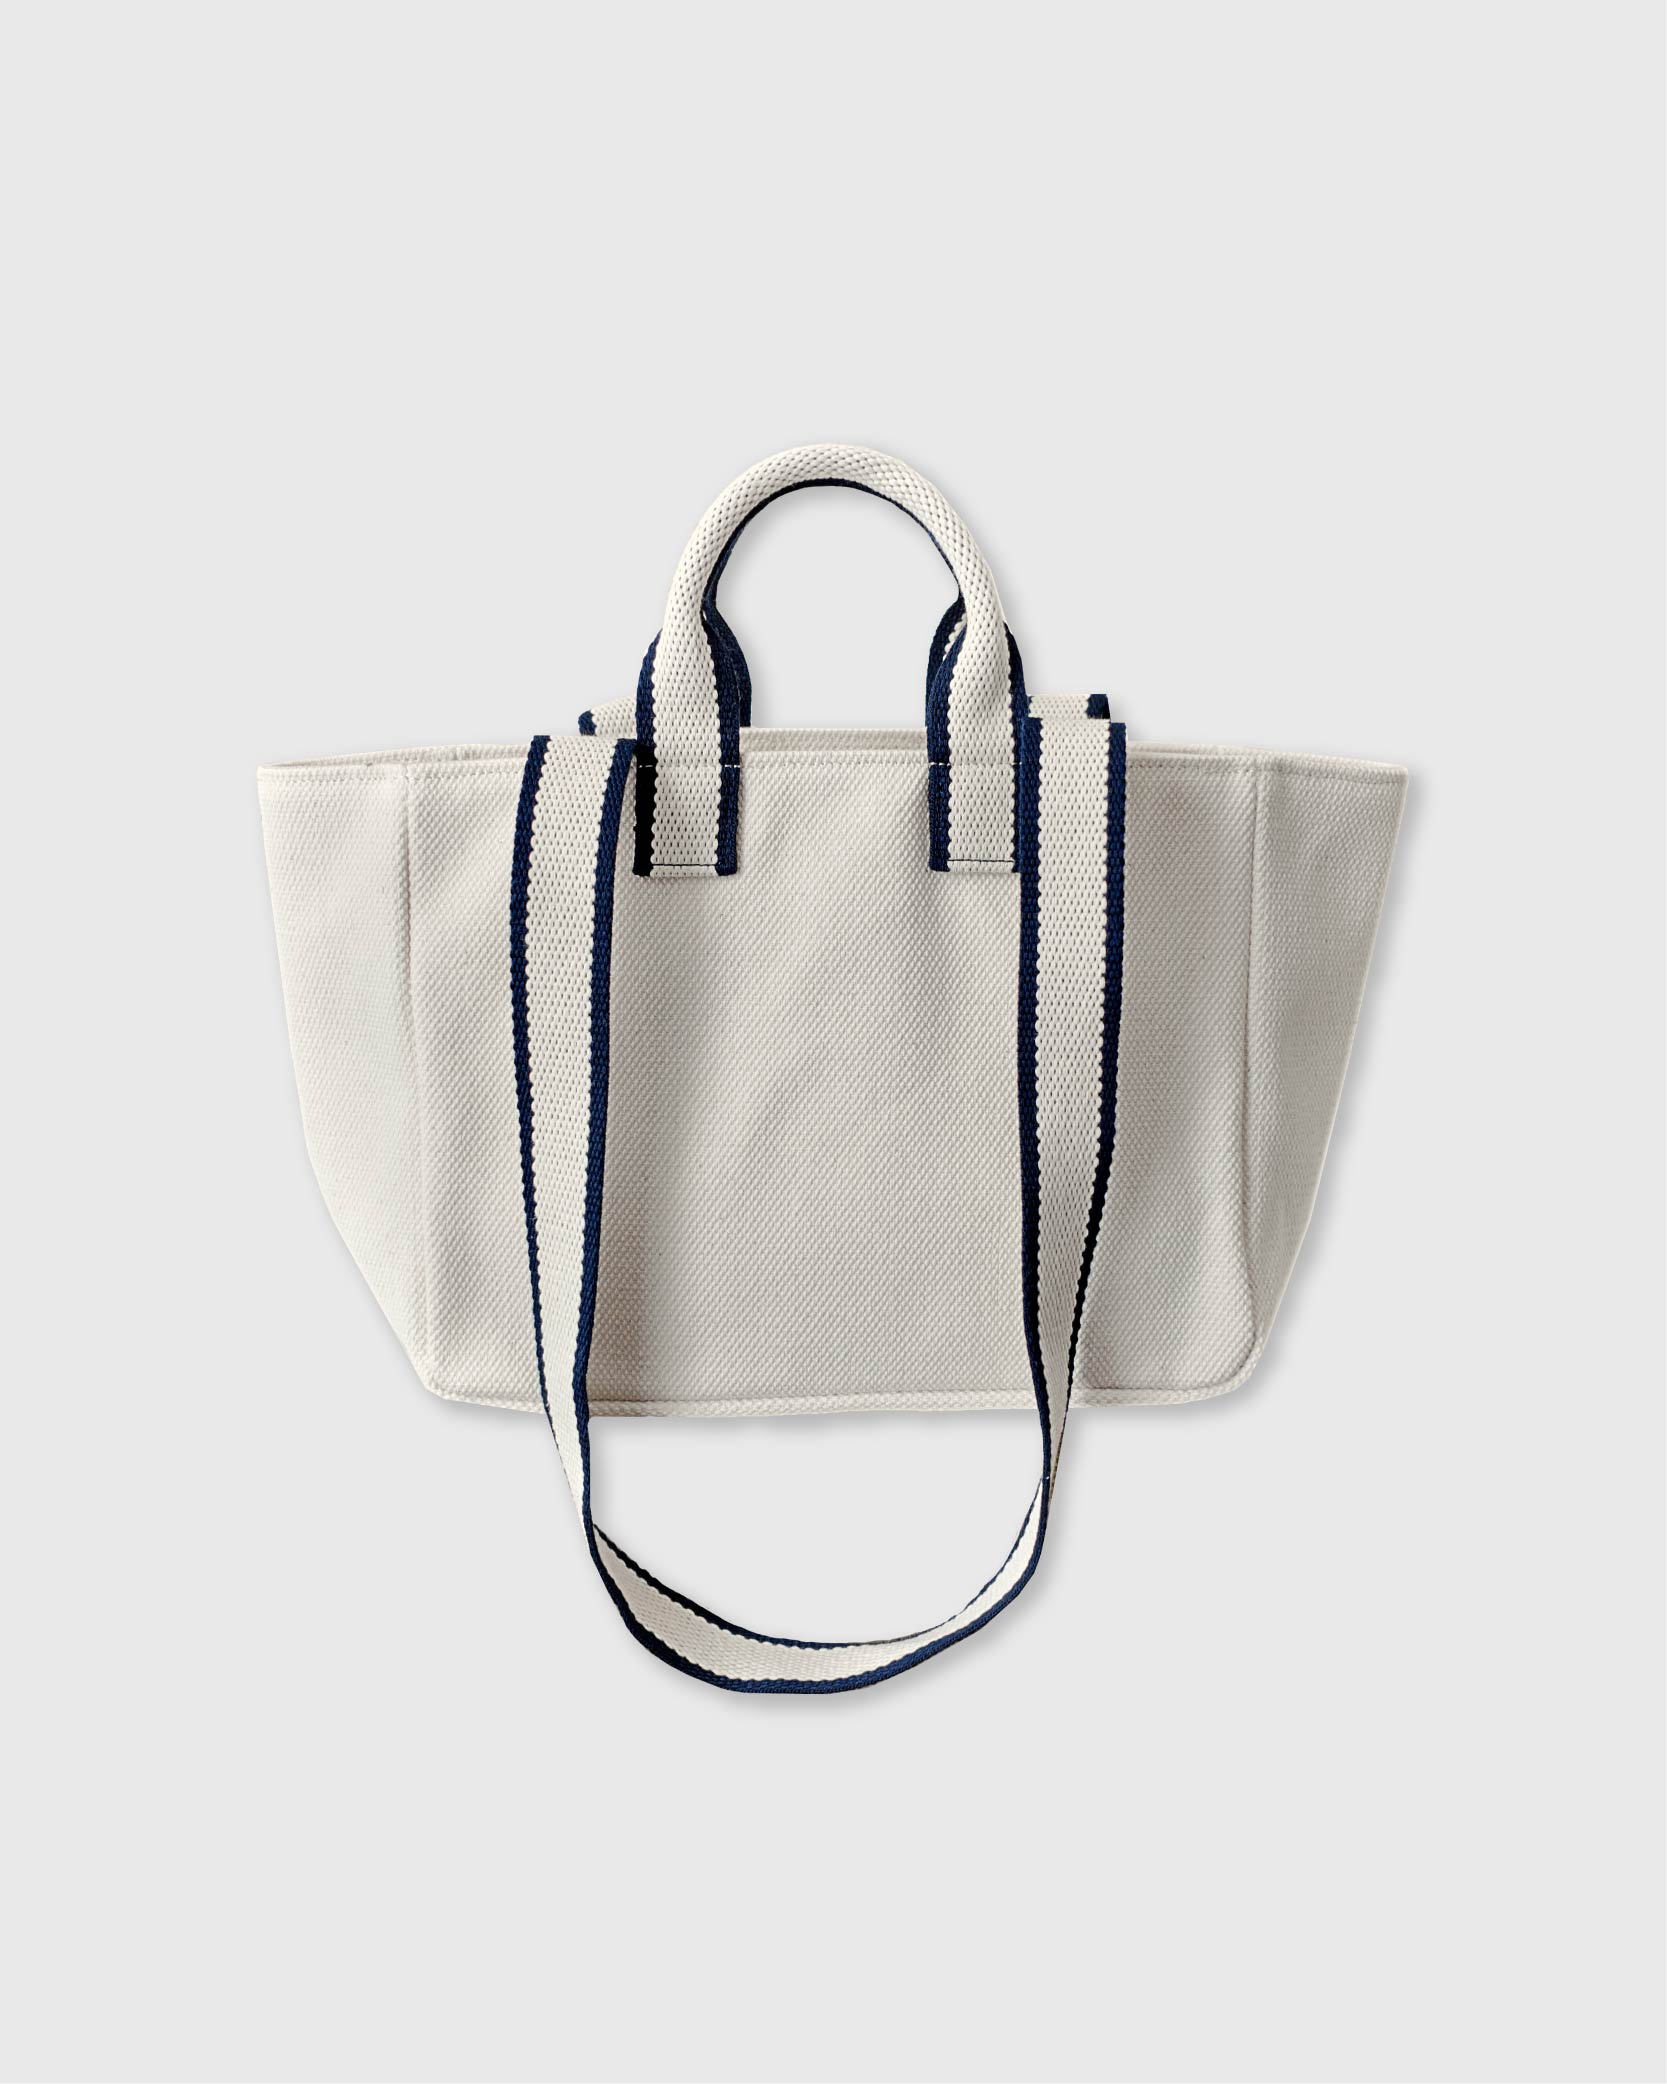 언폴드,unfold,에코백,파우치,천가방,코스터,백팩,스크런치[4/15 예약배송] Mini Two-tone Strap Bag (ivory)